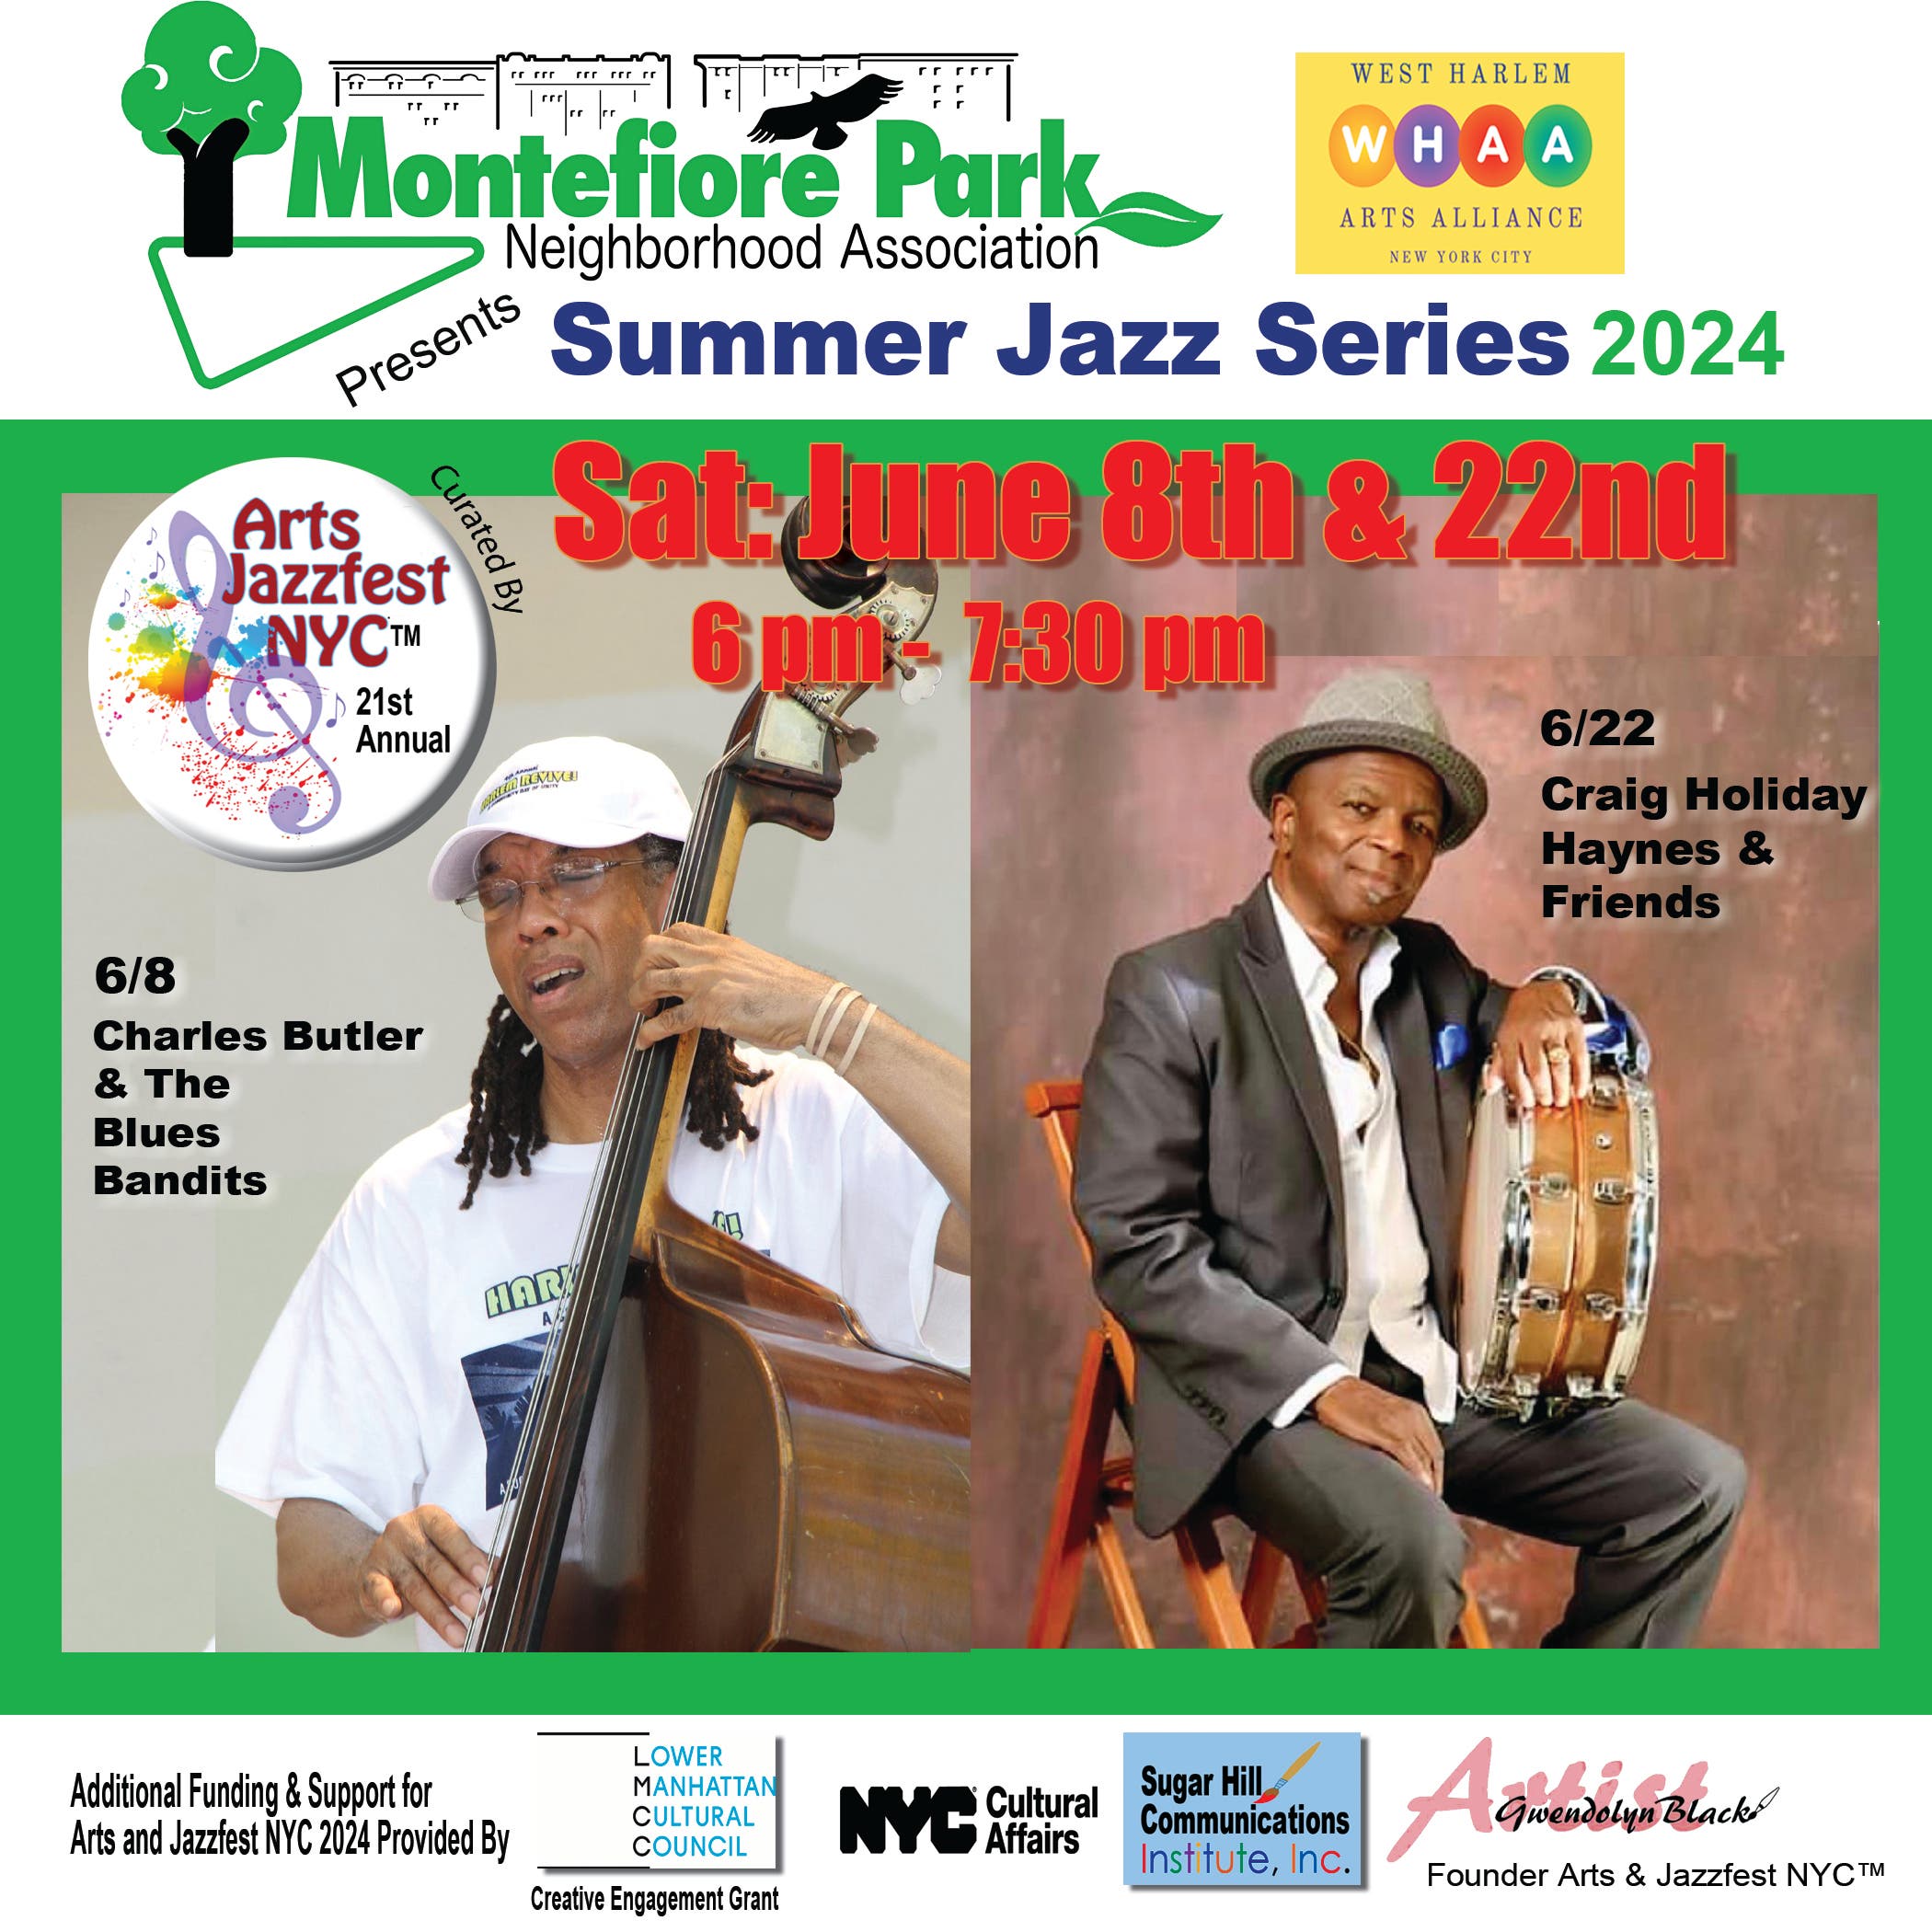 West Harlem Arts Alliance/Montefiore Square Park Summer Jazz Series (Arts & Jazzfest NYC)